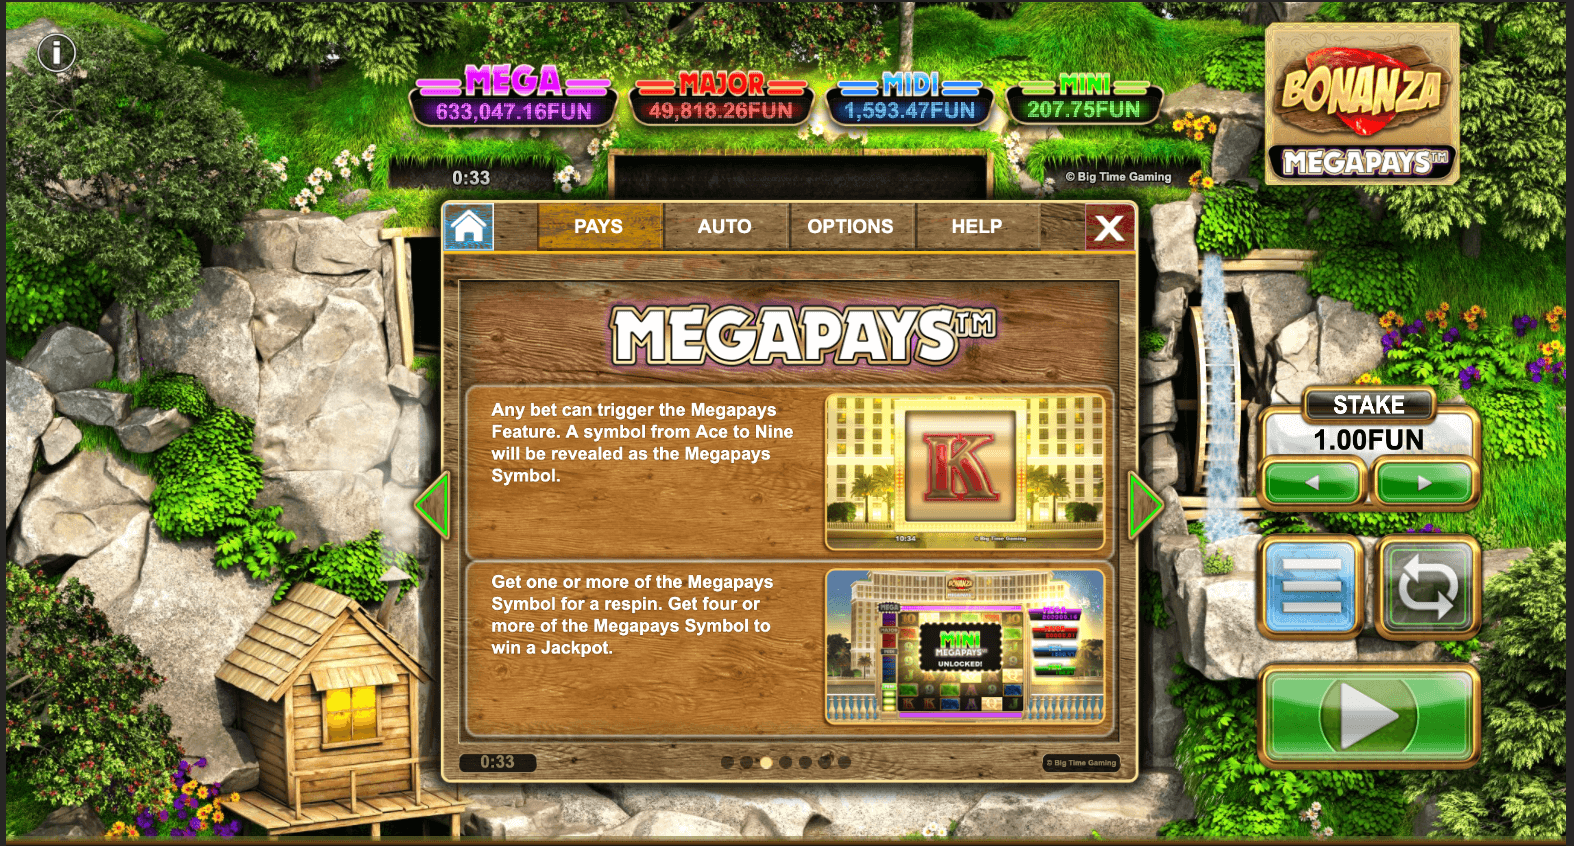 Bonanza Megapays  proceso de juego